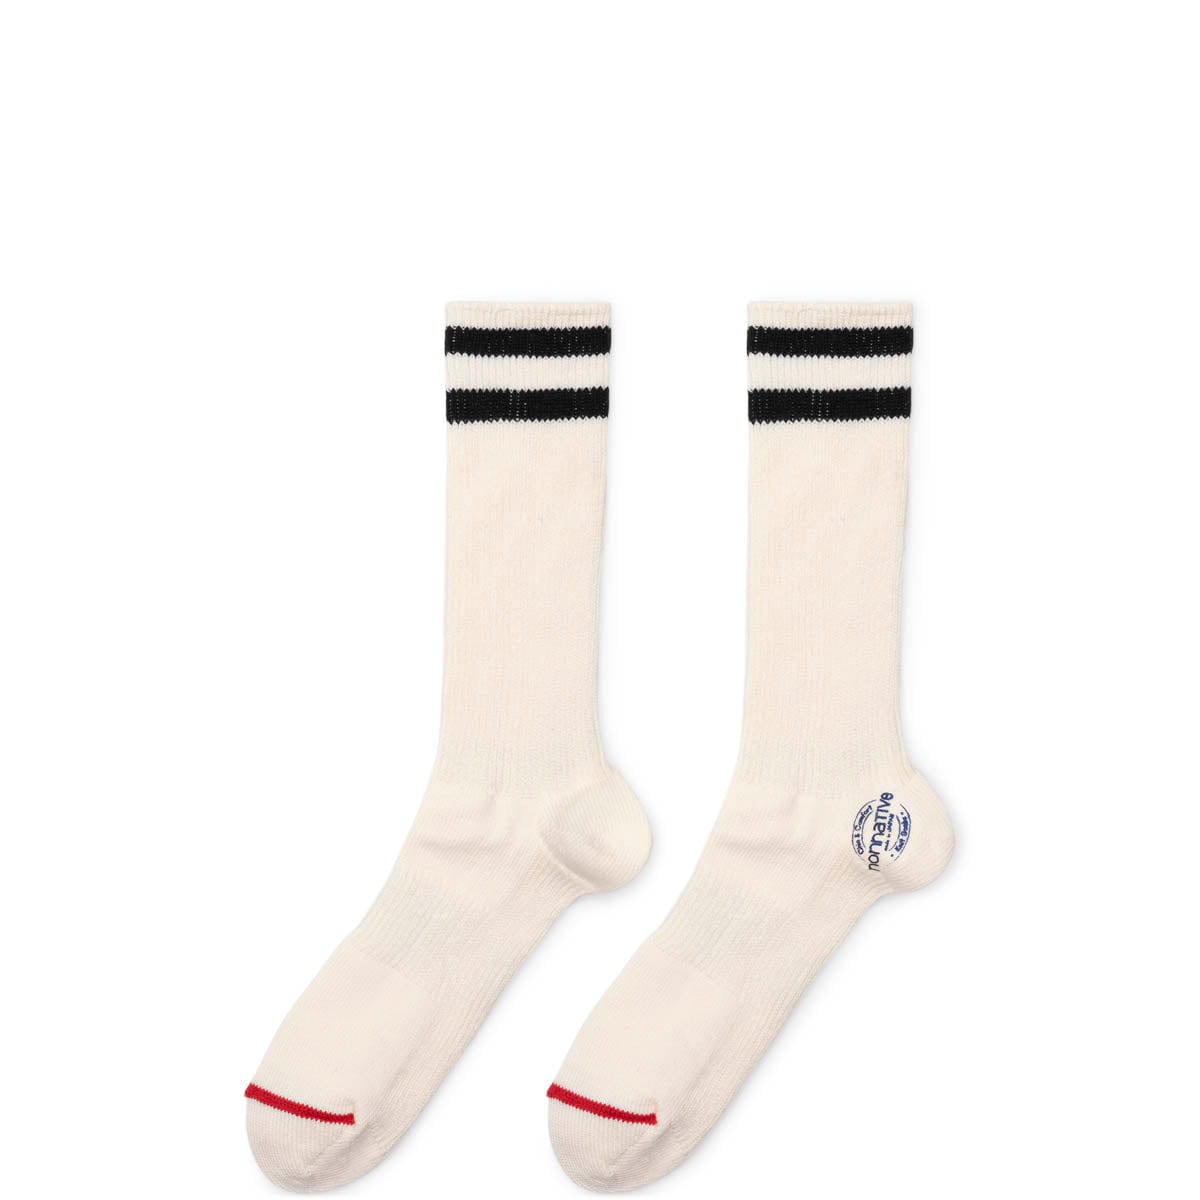 Nonnative Socks BLACK / O/S DWELLER SOCKS HI C/N/P YARN